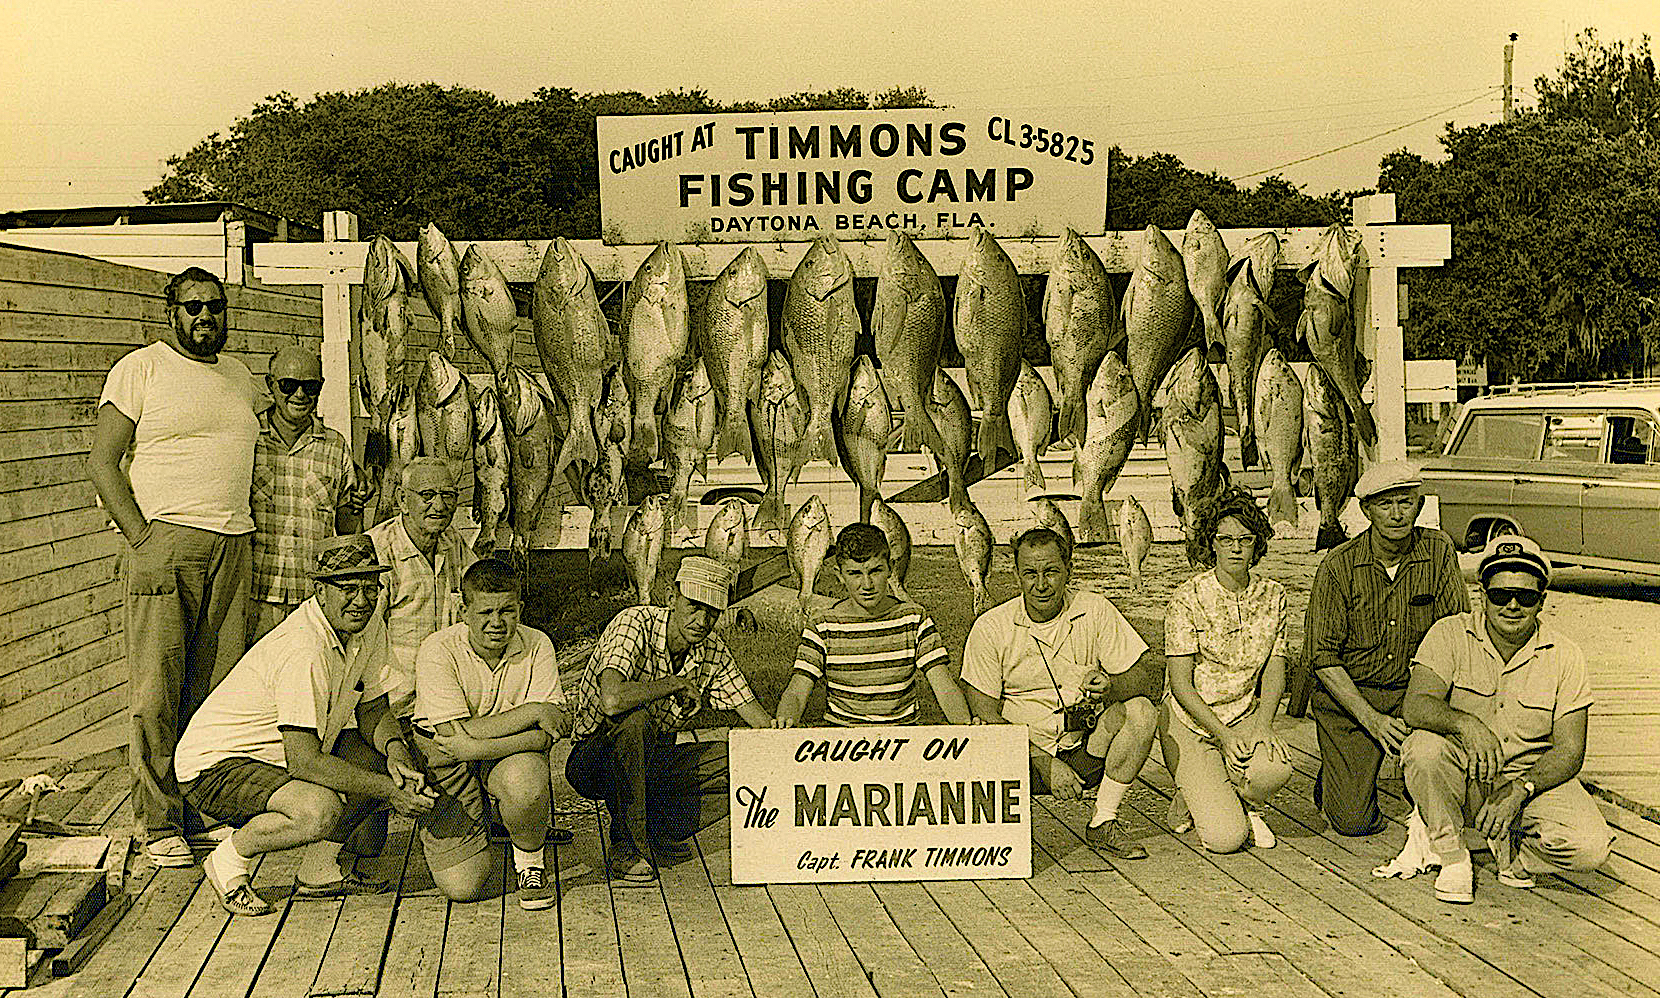 image: fishers with catches, Daytona, 1963.